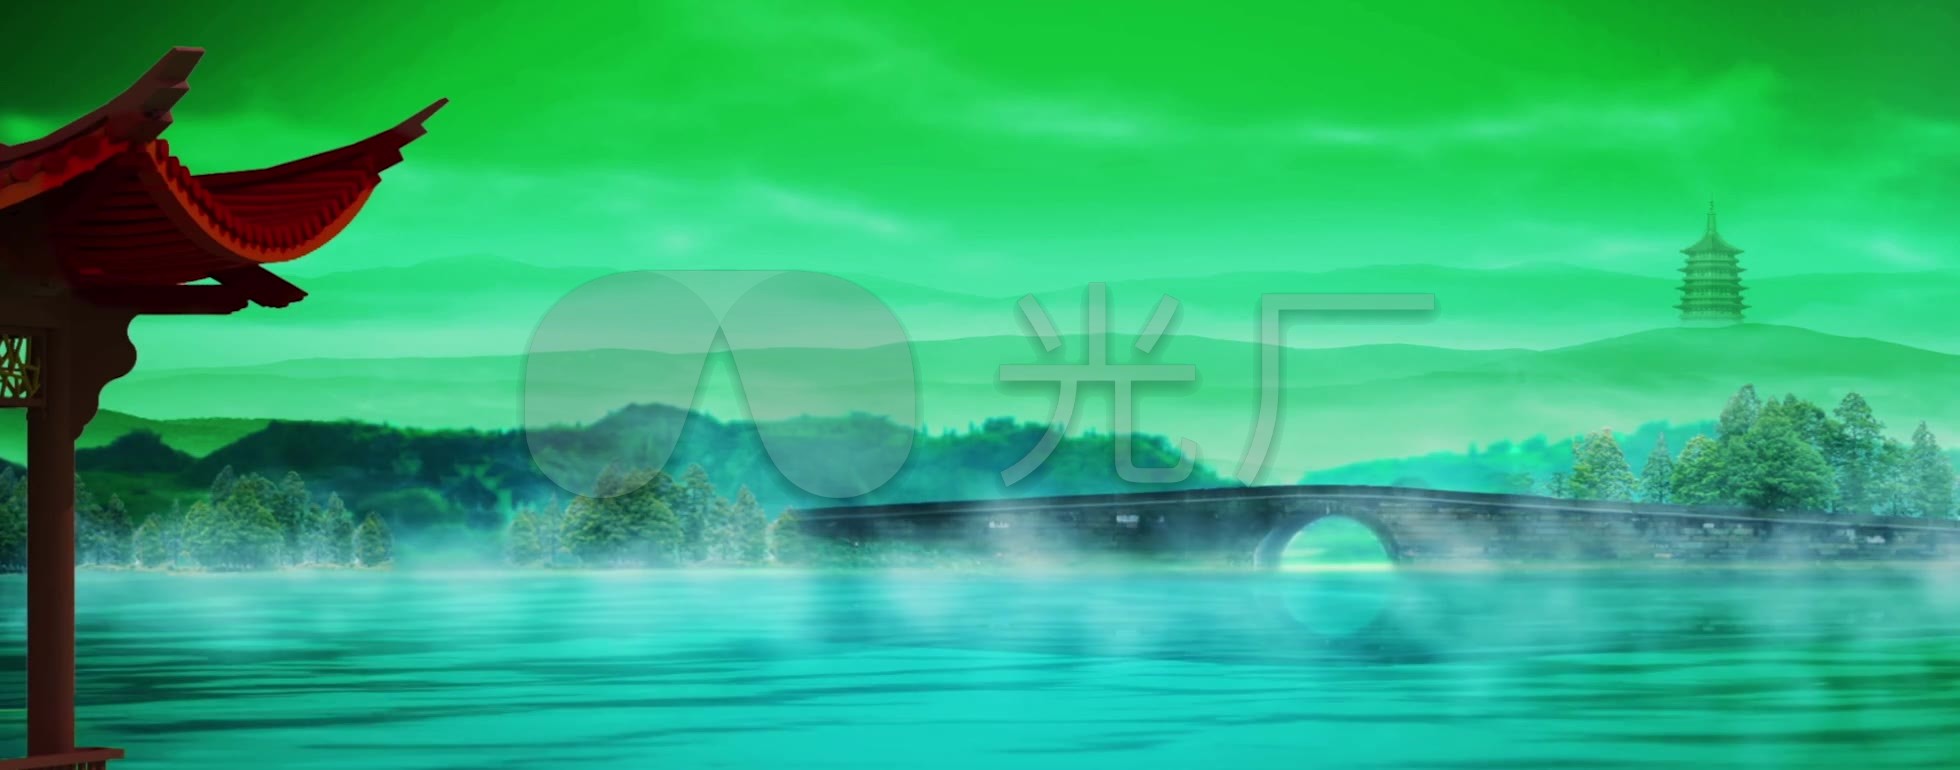 视频素材 舞台背景 中国风背景 白蛇传雷锋塔西湖山水  来自视频原始